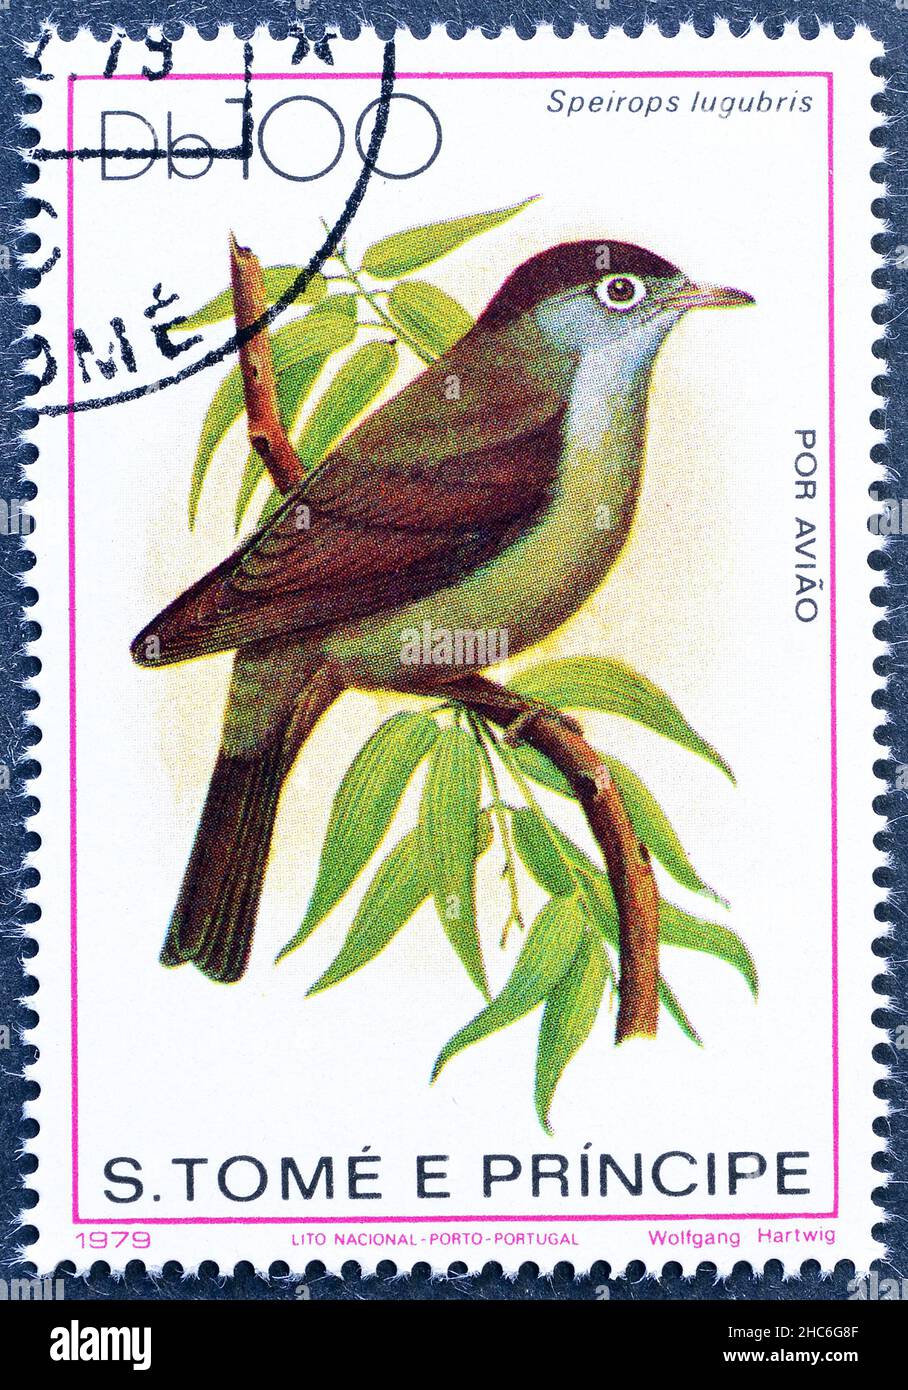 Abgesagte Briefmarke gedruckt von São Tomé und Príncipe , die schwarz-kappige Speirops (Zosterops lugubri) zeigt, um 1979. Stockfoto